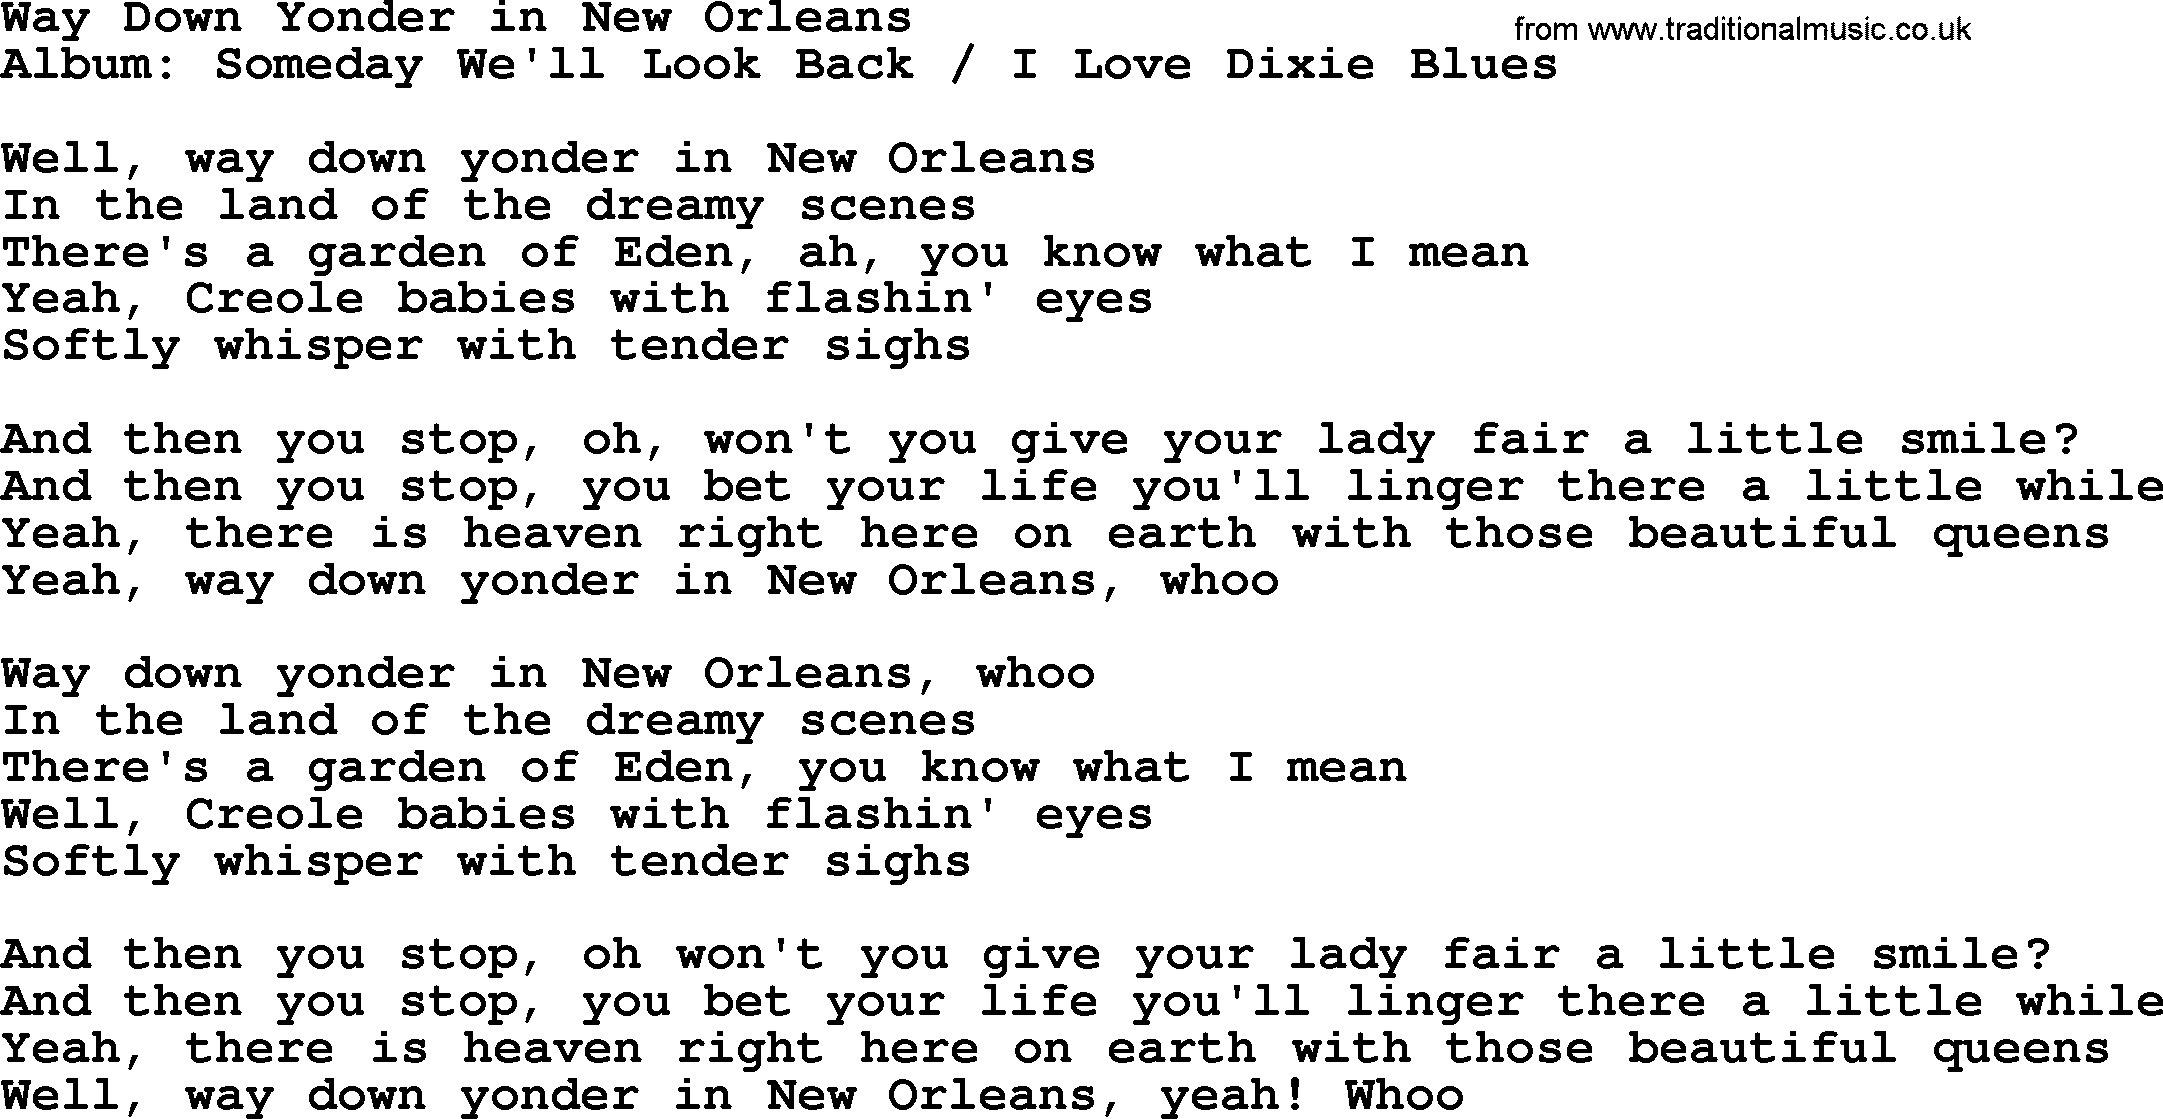 Merle Haggard song: Way Down Yonder In New Orleans, lyrics.